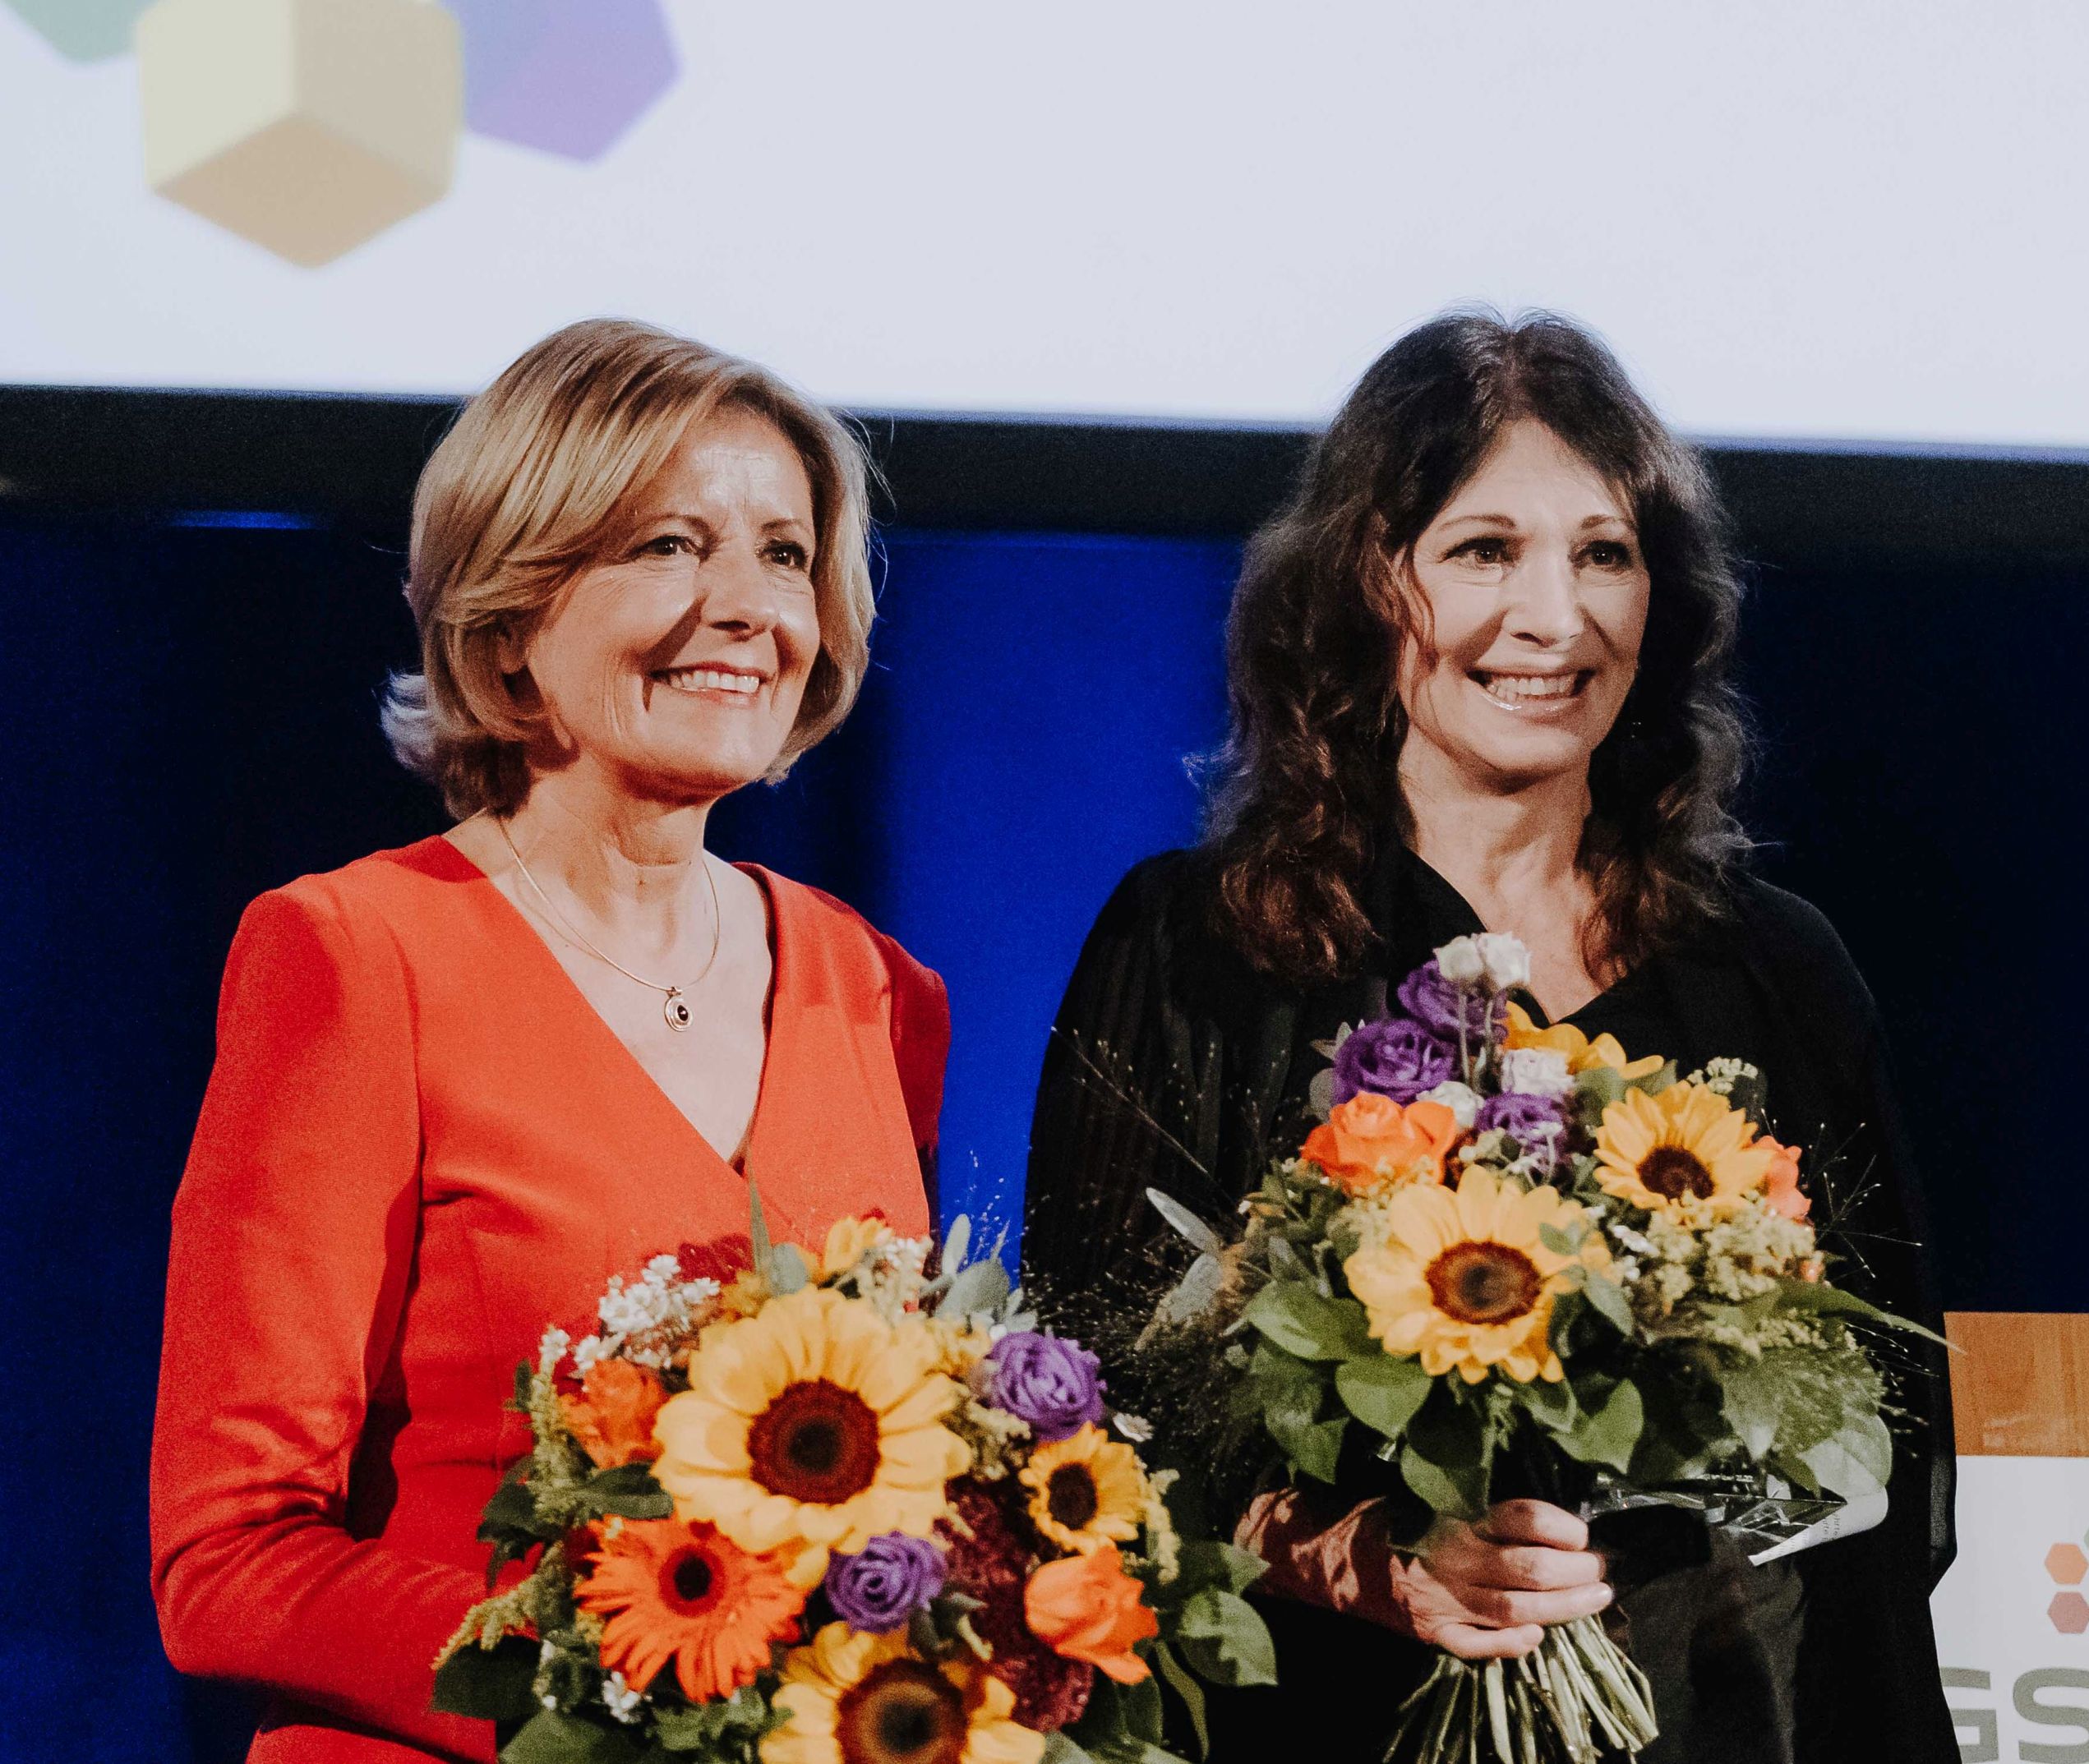 Iris Berben erhält Deutschen Rednerpreis der German Speakers Association – Cordula Nussbaum wird in die Hall of Fame aufgenommen